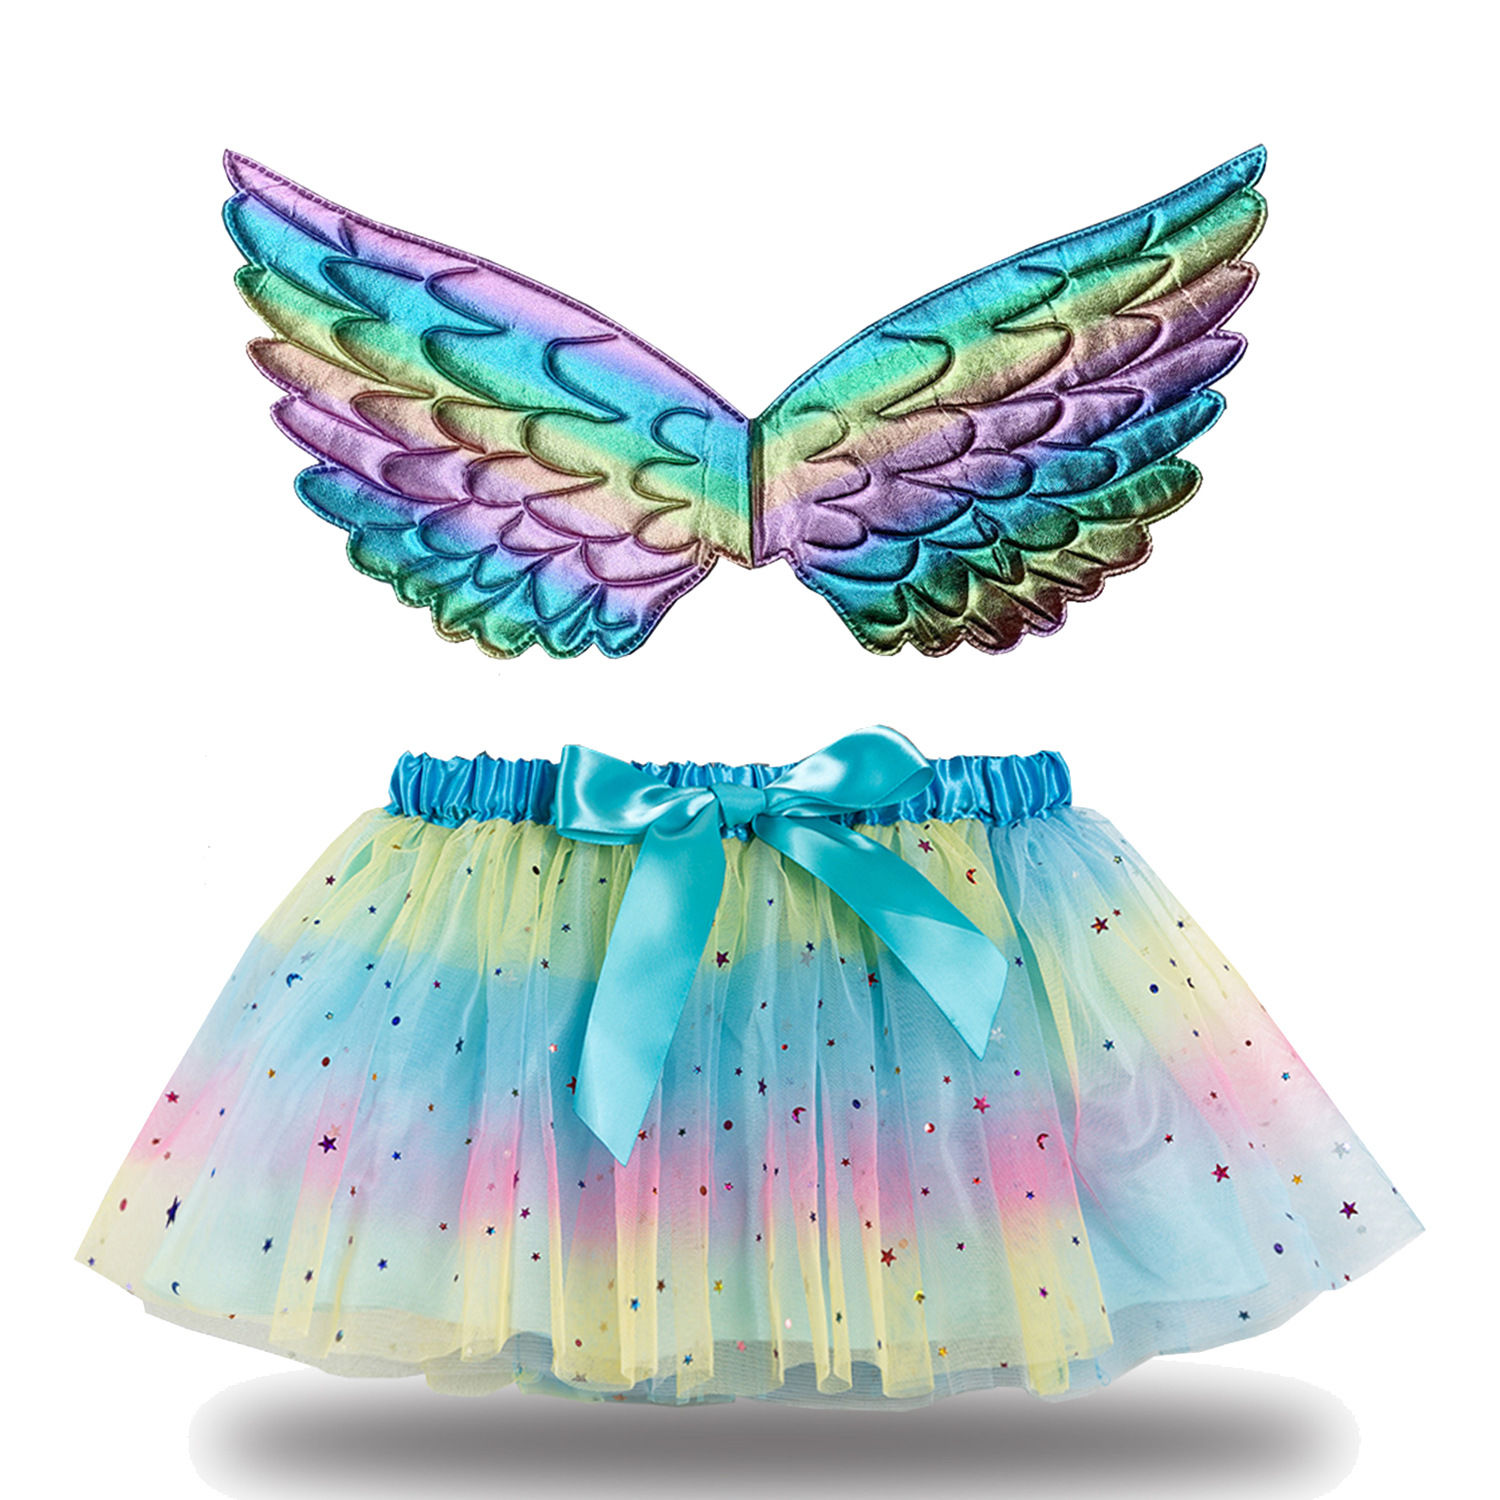 Children's dress girl's skirt star moon netting children's skirt send wings Tutu Skirt shawl skirt lining skirt